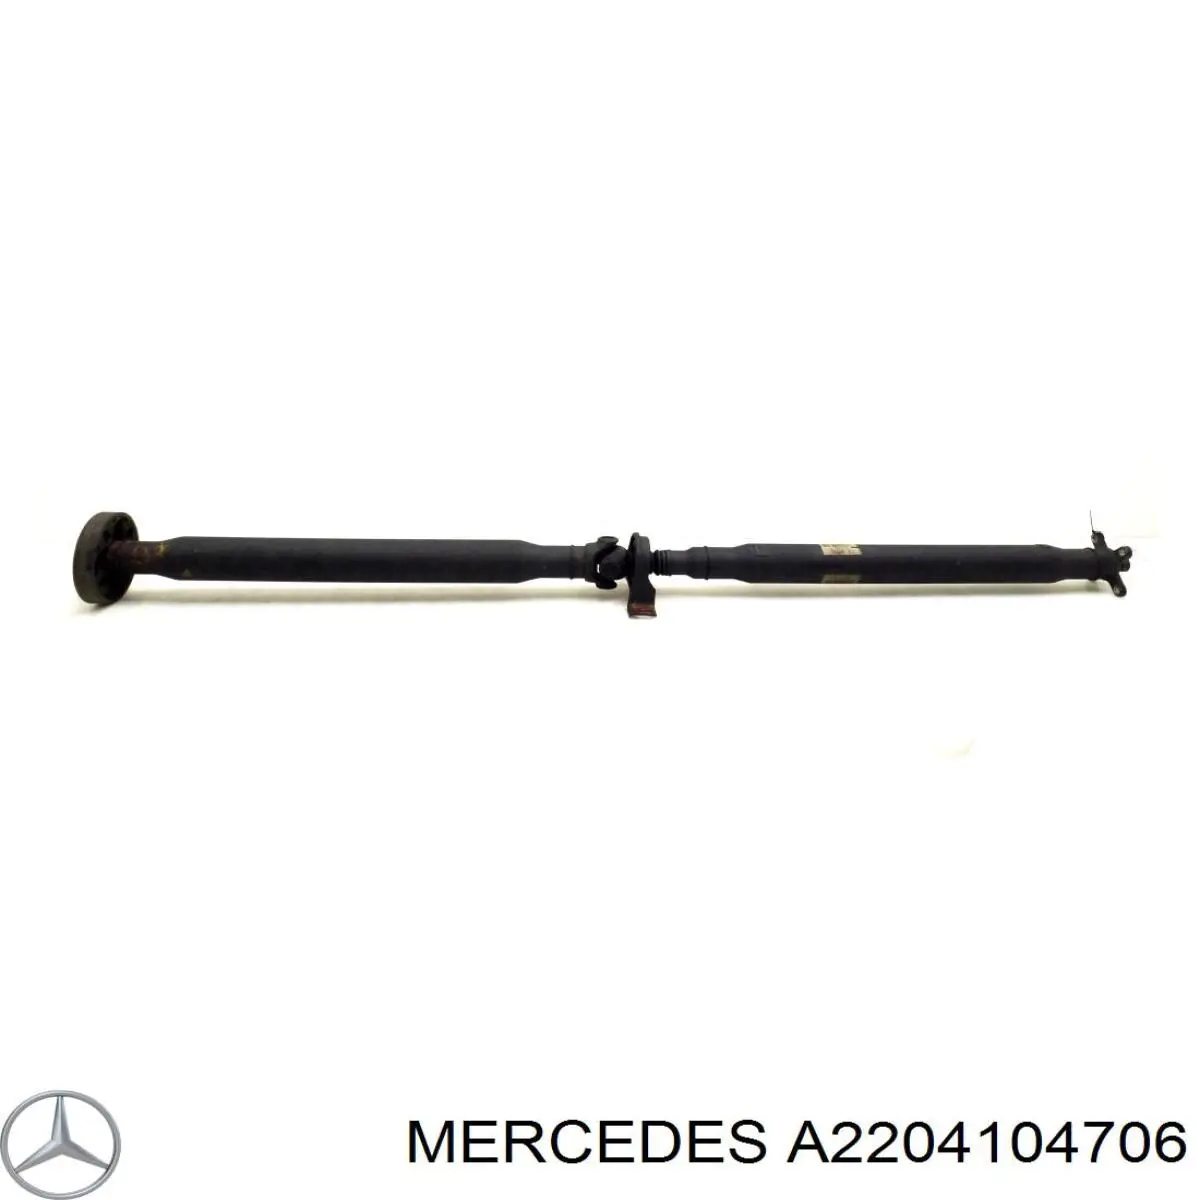 A2204104706 Mercedes вал карданный задний, в сборе